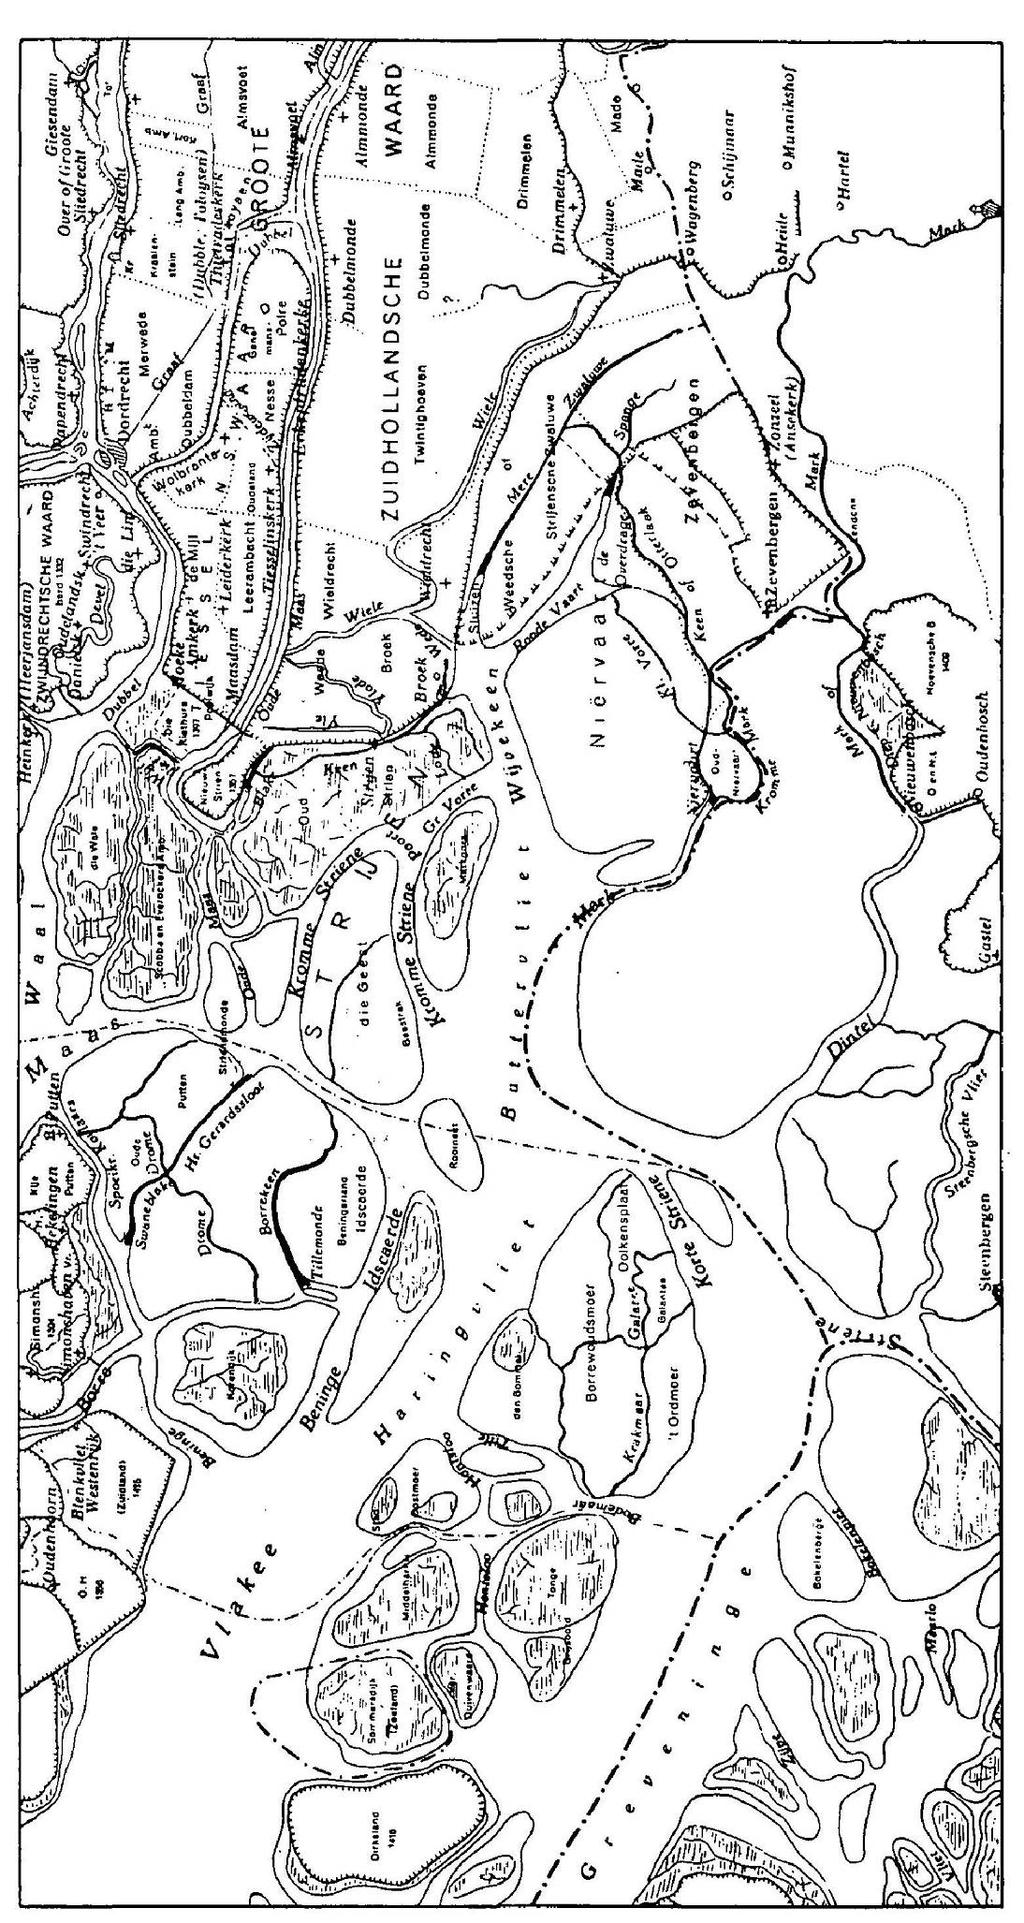 Afbeelding 11. Omgeving van de onderzoekslocatie (omcirkeld) omstreeks 1421, vóór de St. Elizabethsvloed.